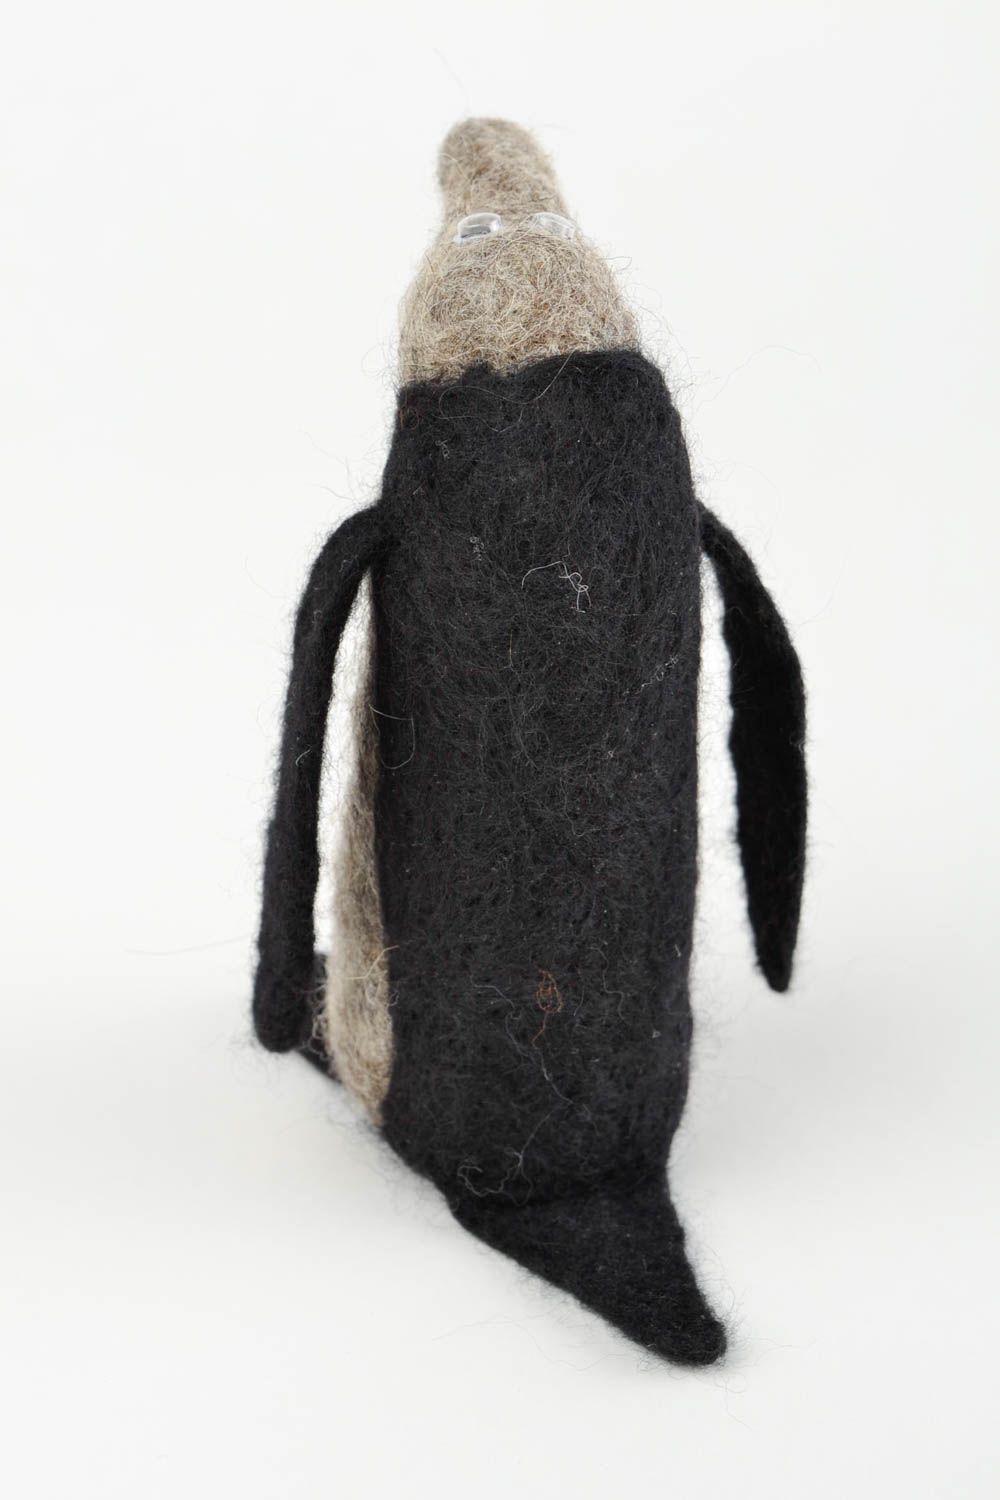 Spielzeug aus Filz handmade Kuschel Tier Plüschtier Pinguin Kuscheltier Stoff foto 5